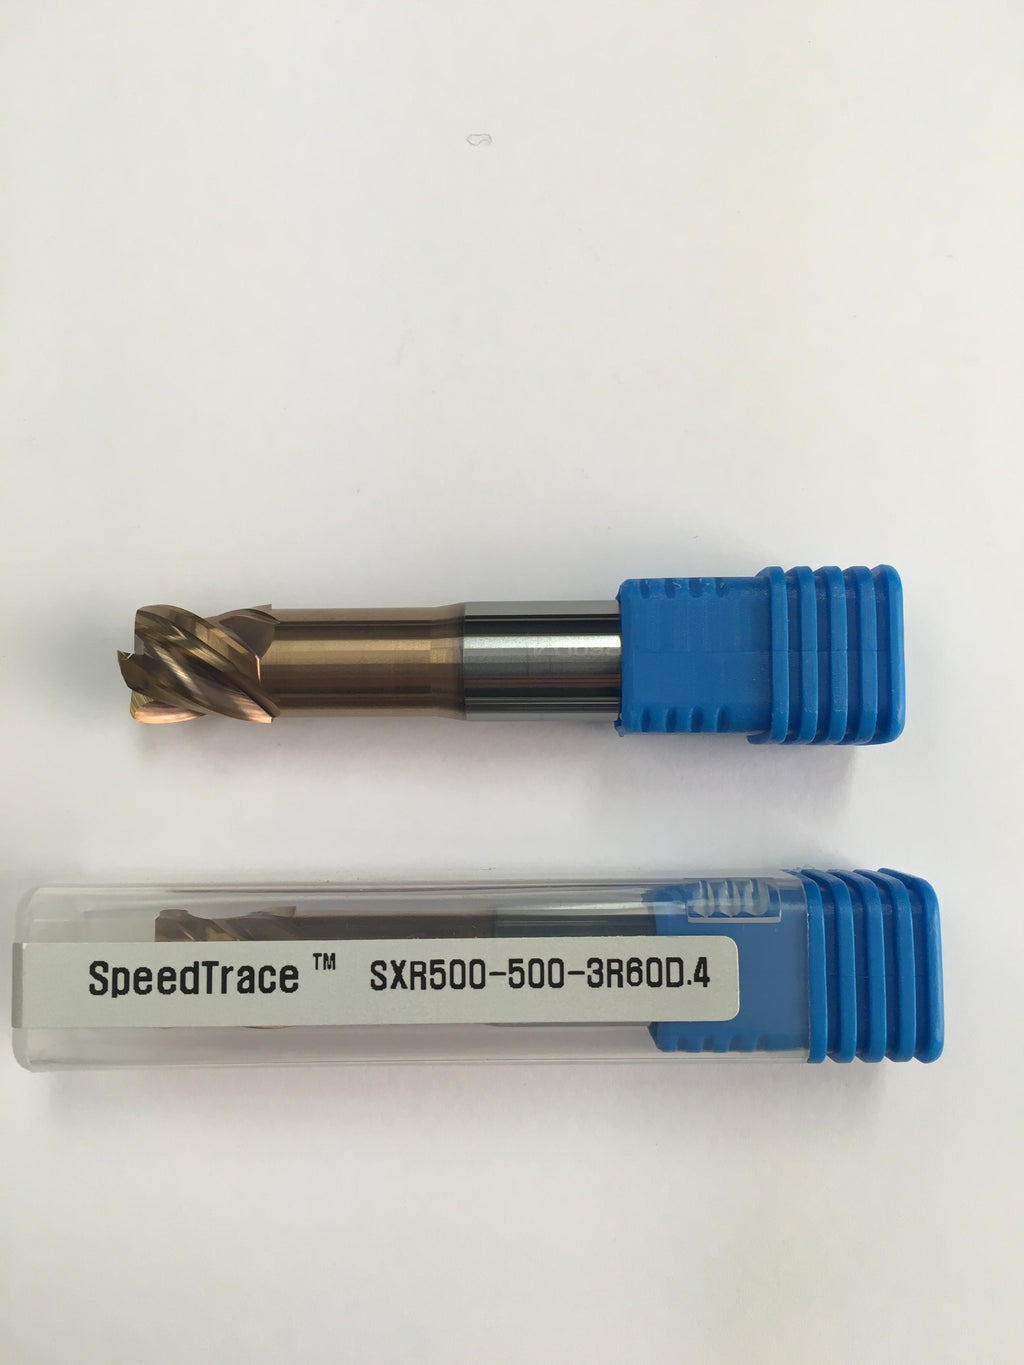 SXR500-500-3R60D.4 (1/2 x 1/2 x 9/16 x 3, 4F, R060, CRB, HC)